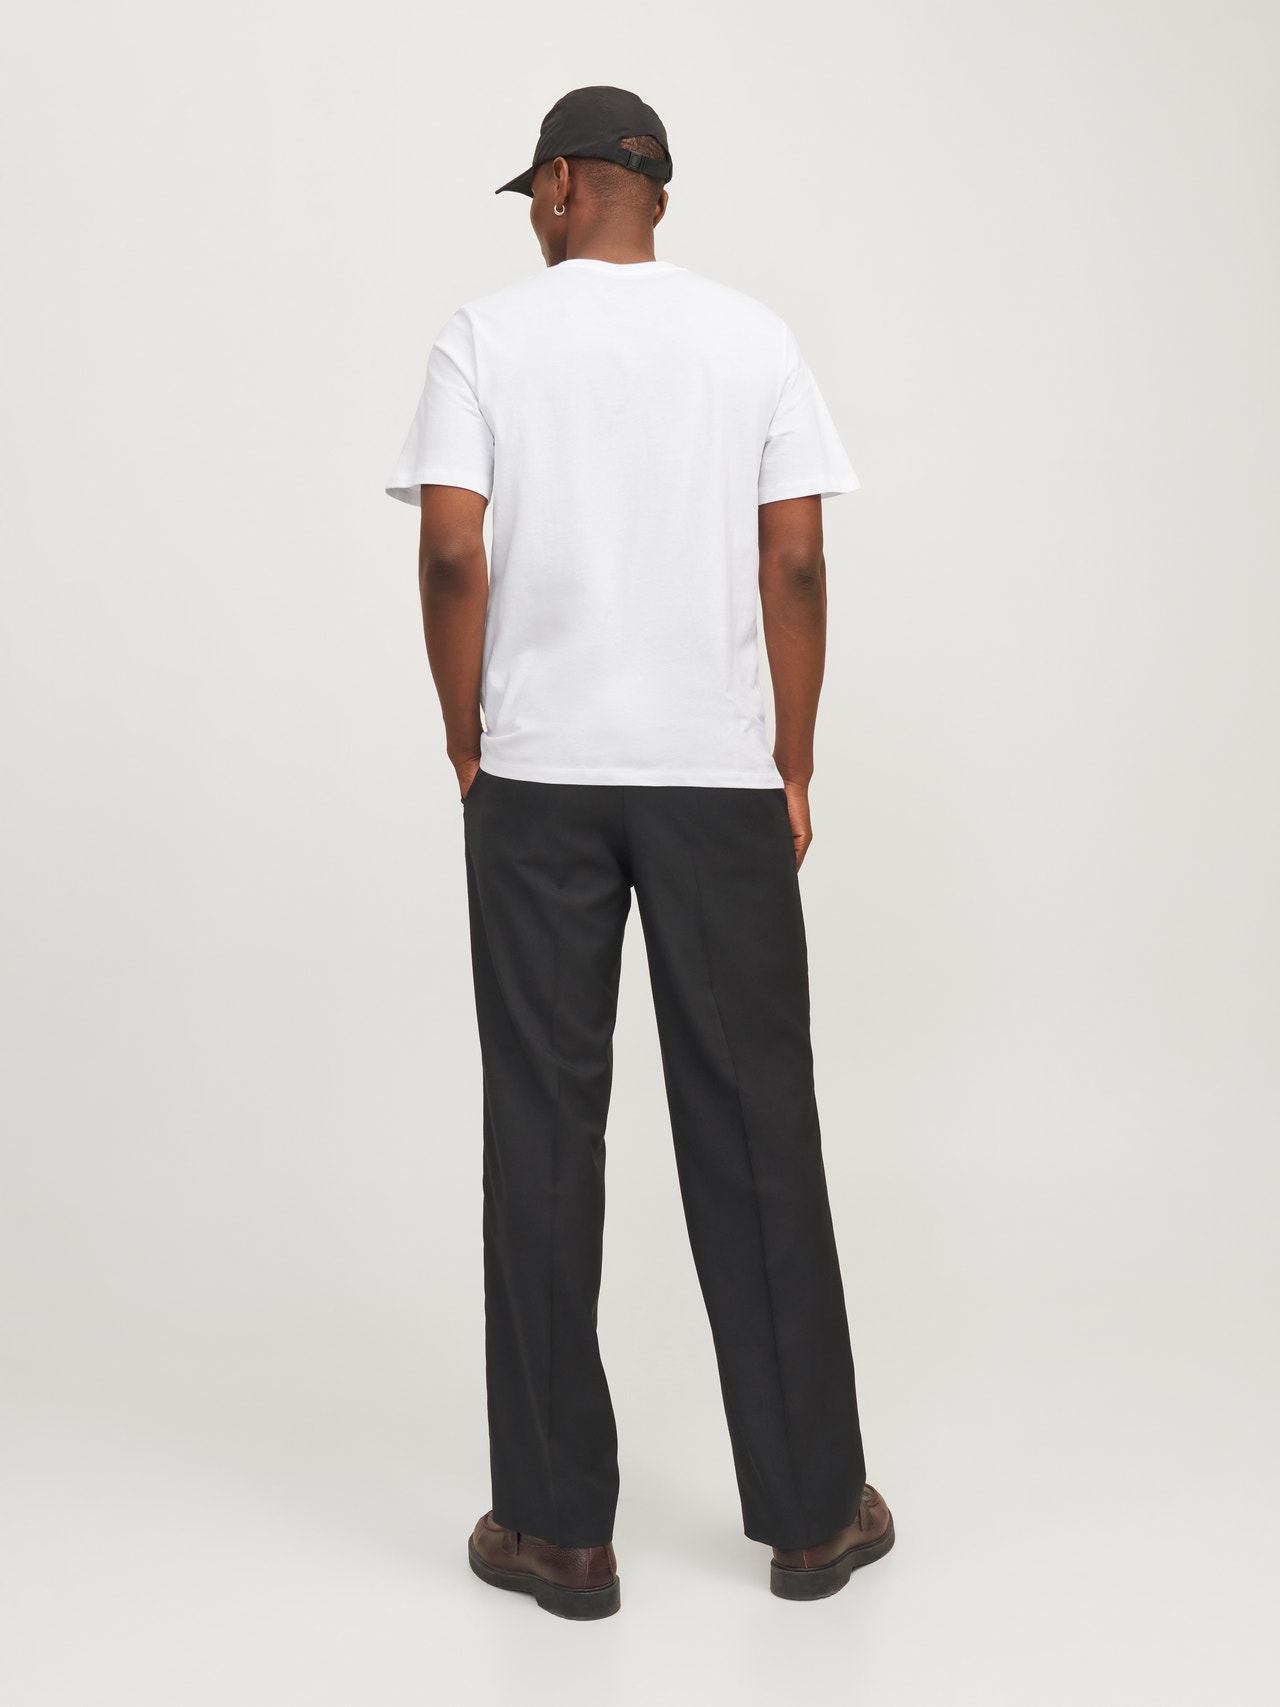 Jack & Jones T-shirt Estampar Decote Redondo -White - 12255164